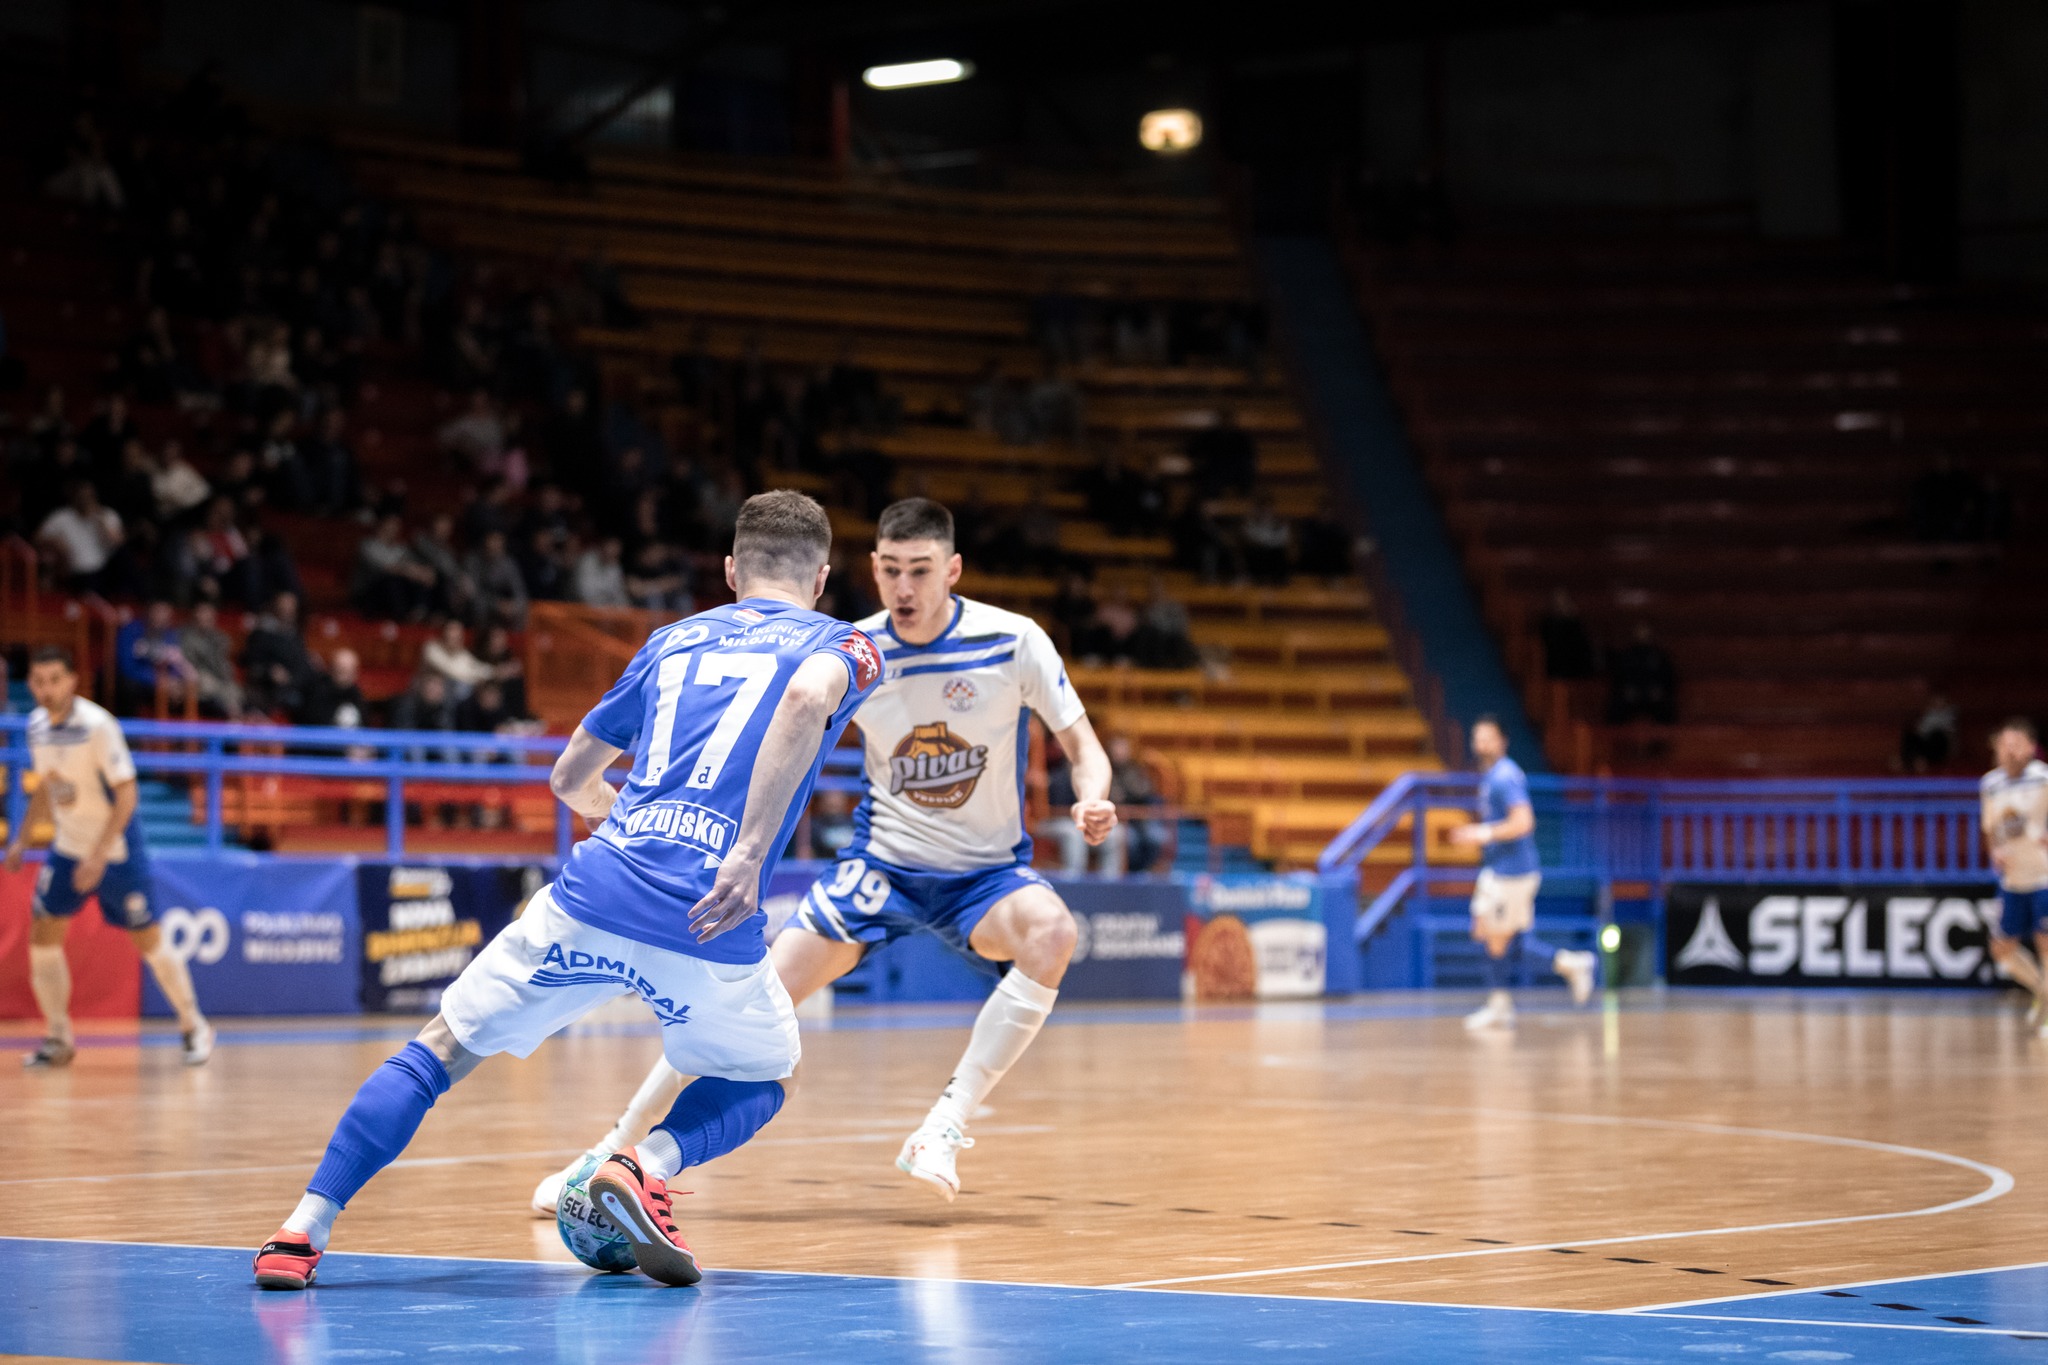 Futsal Dinamo - Vrgorac